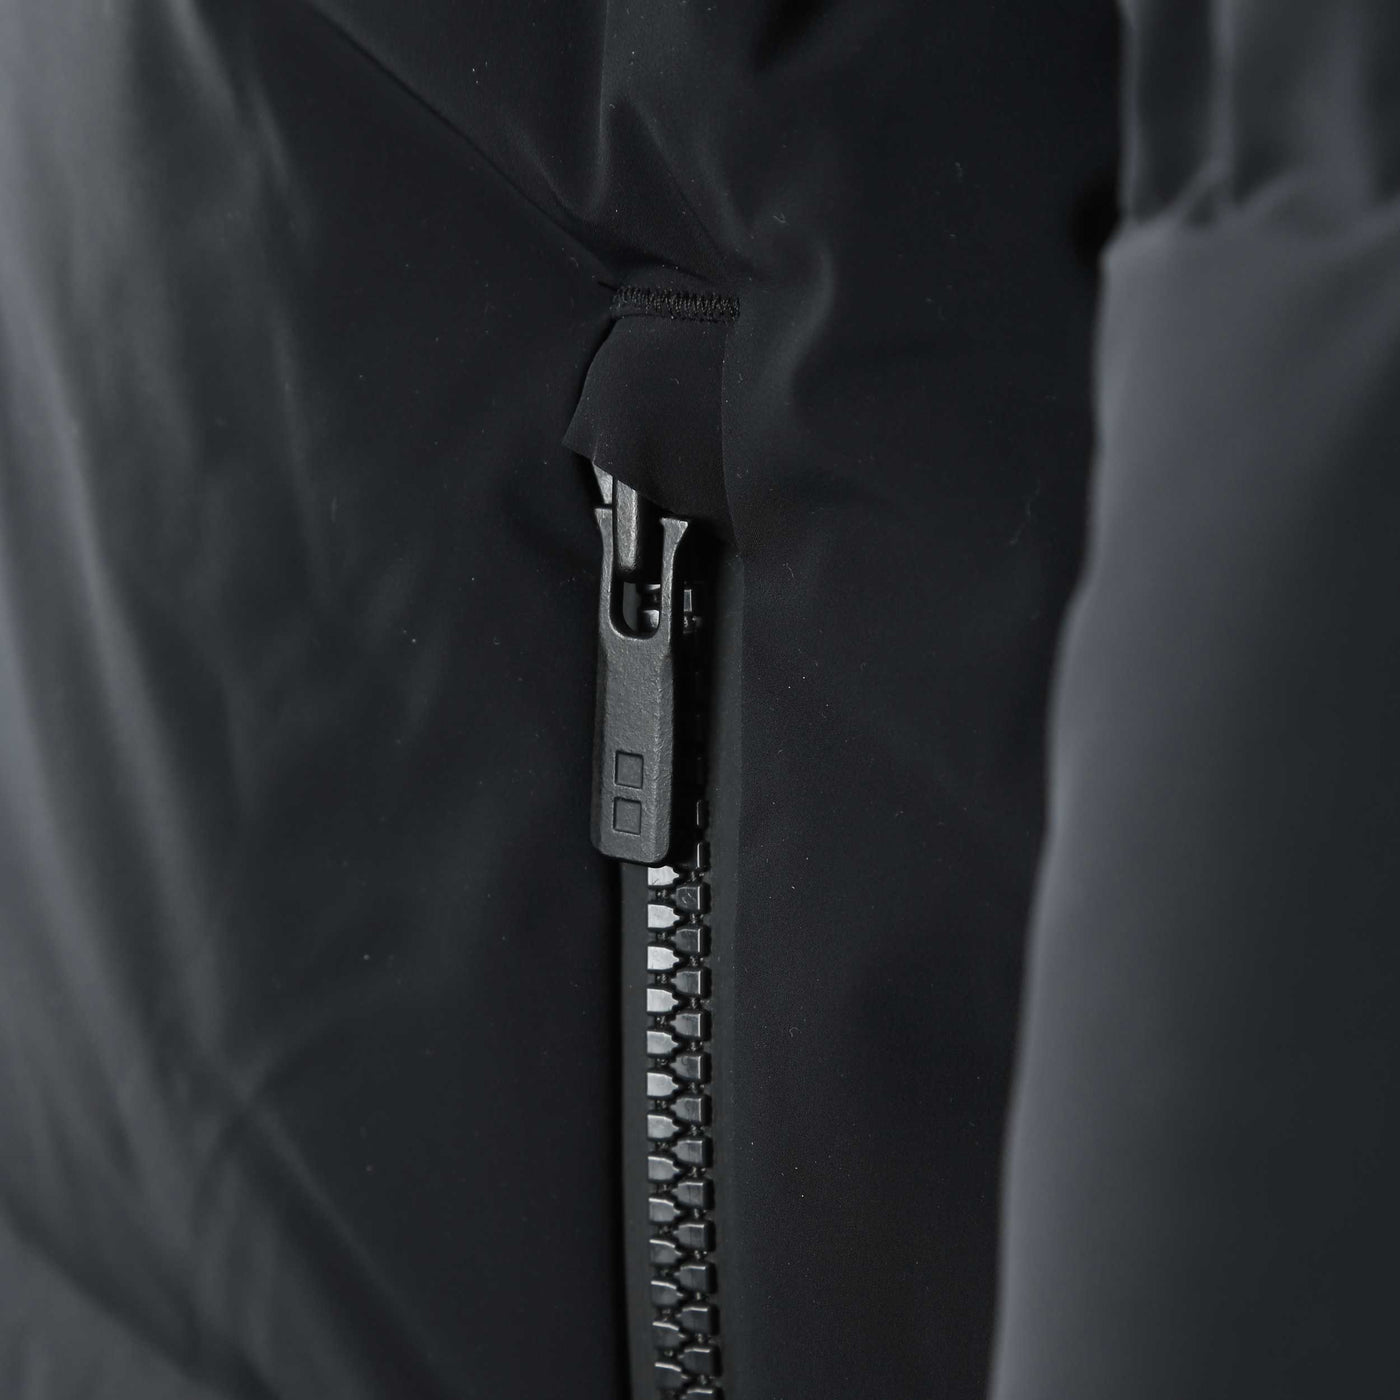 UBR Titan Jacket in Black Zip Pocket